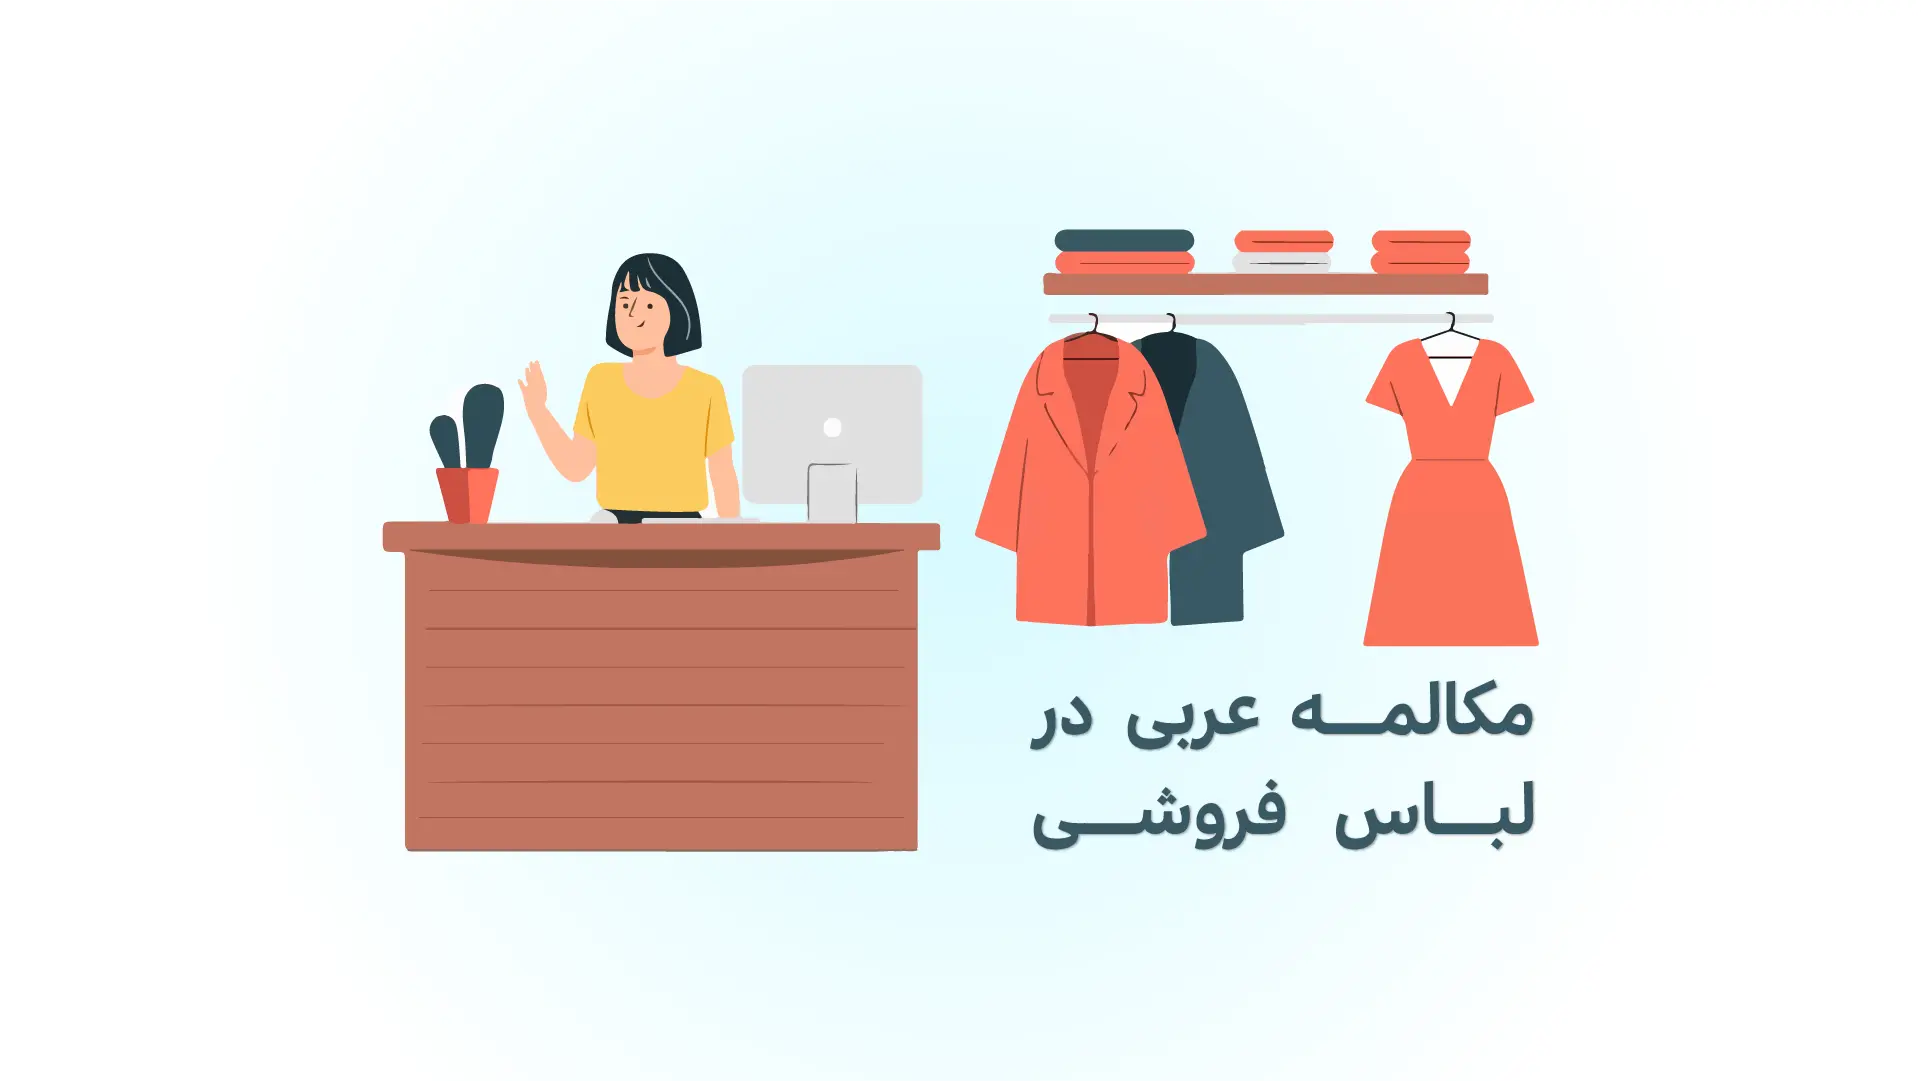 مکالمه عربی کوتاه با مشتری در لباس فروشی (صوتی)